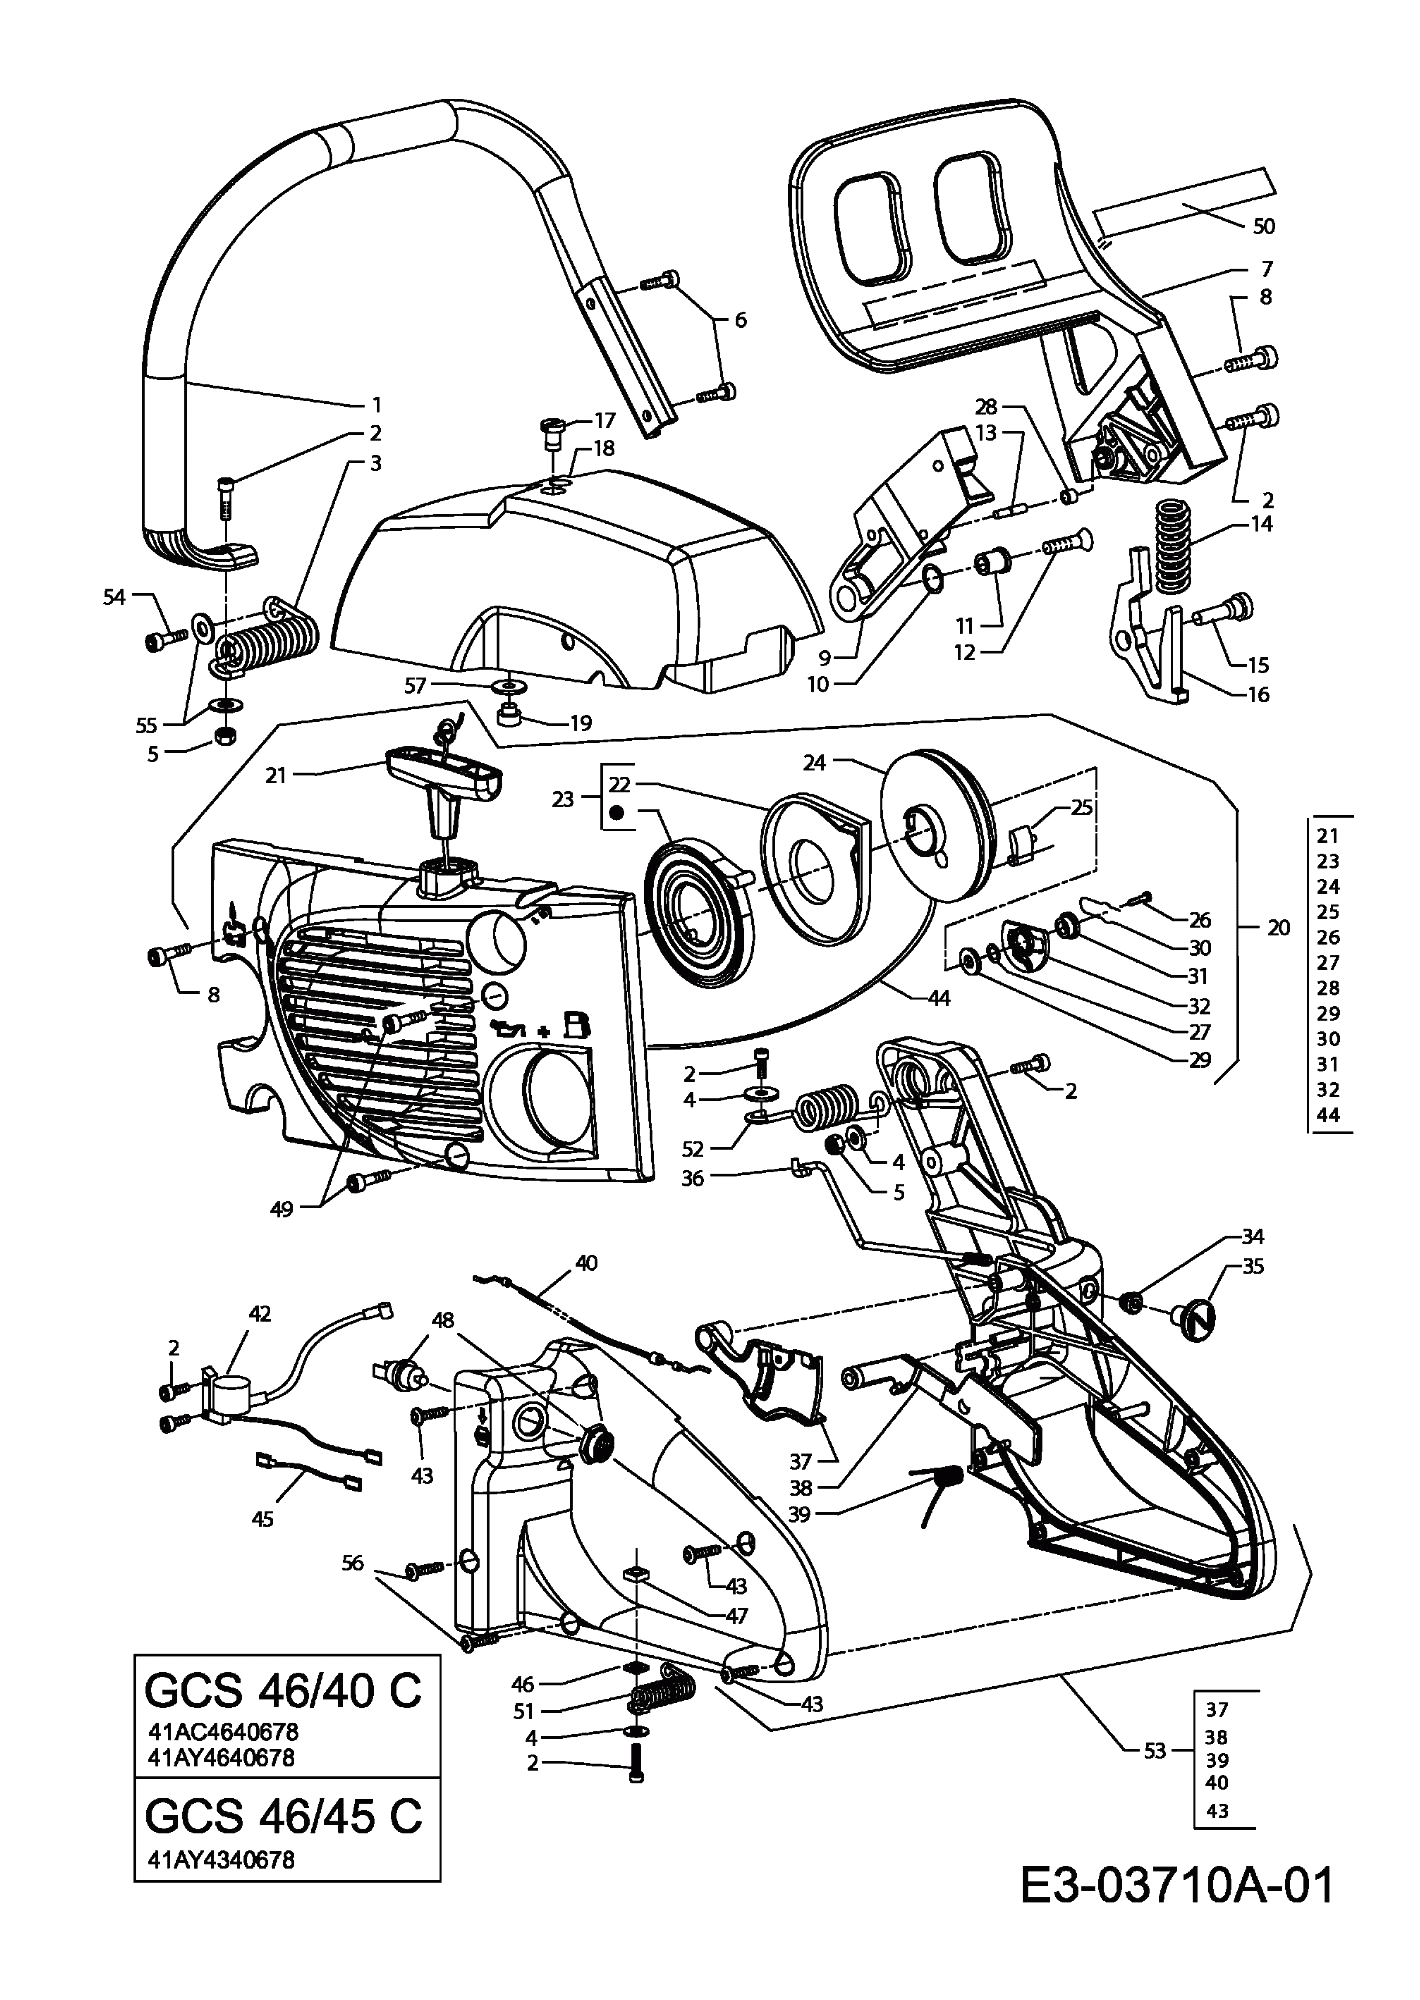 MTD Артикул 41AC4640678 (год выпуска 2009). Handle grip, двигатель Крышкаs